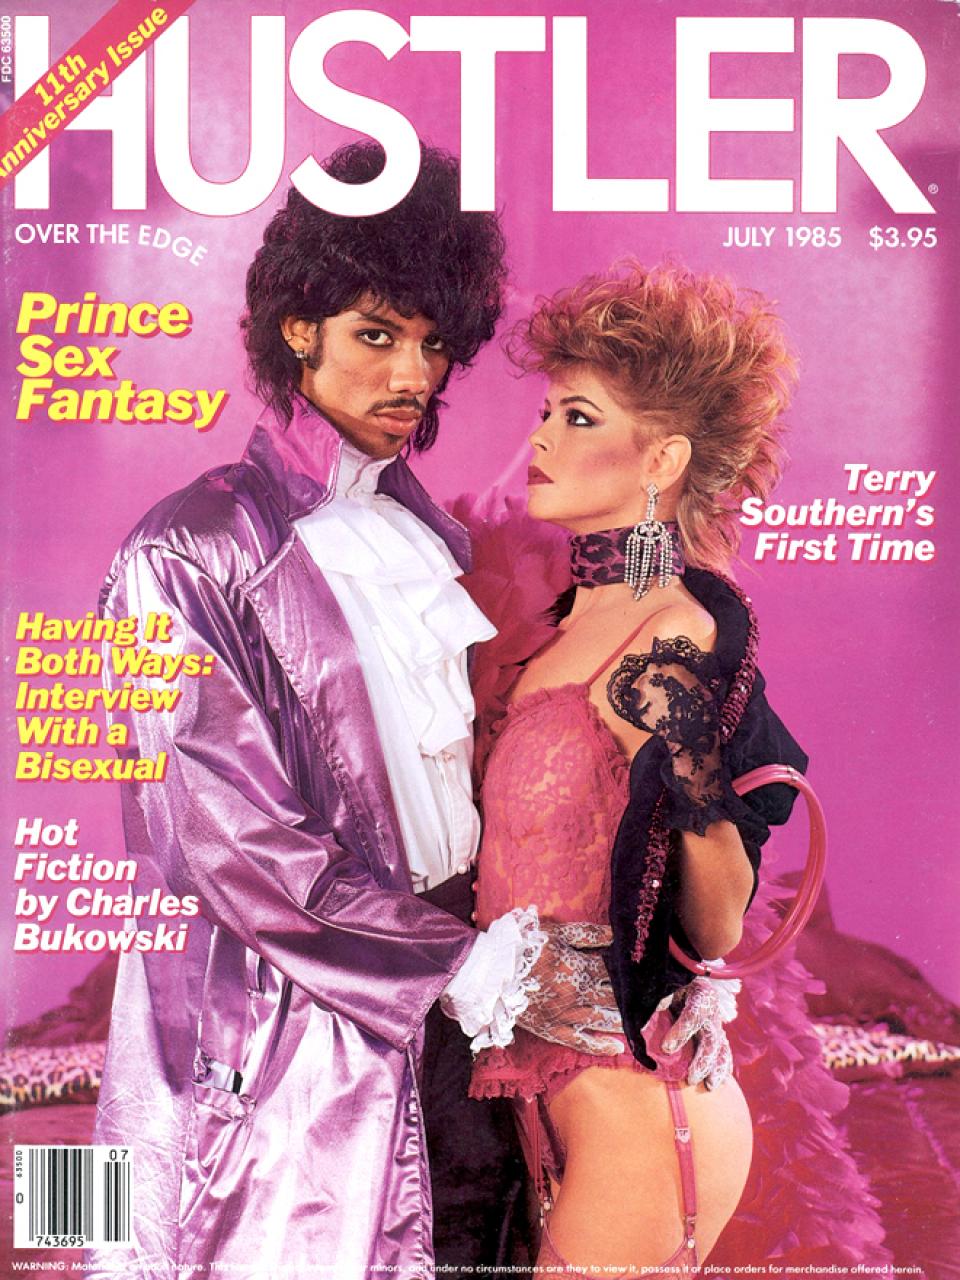 1980s hustler magazine